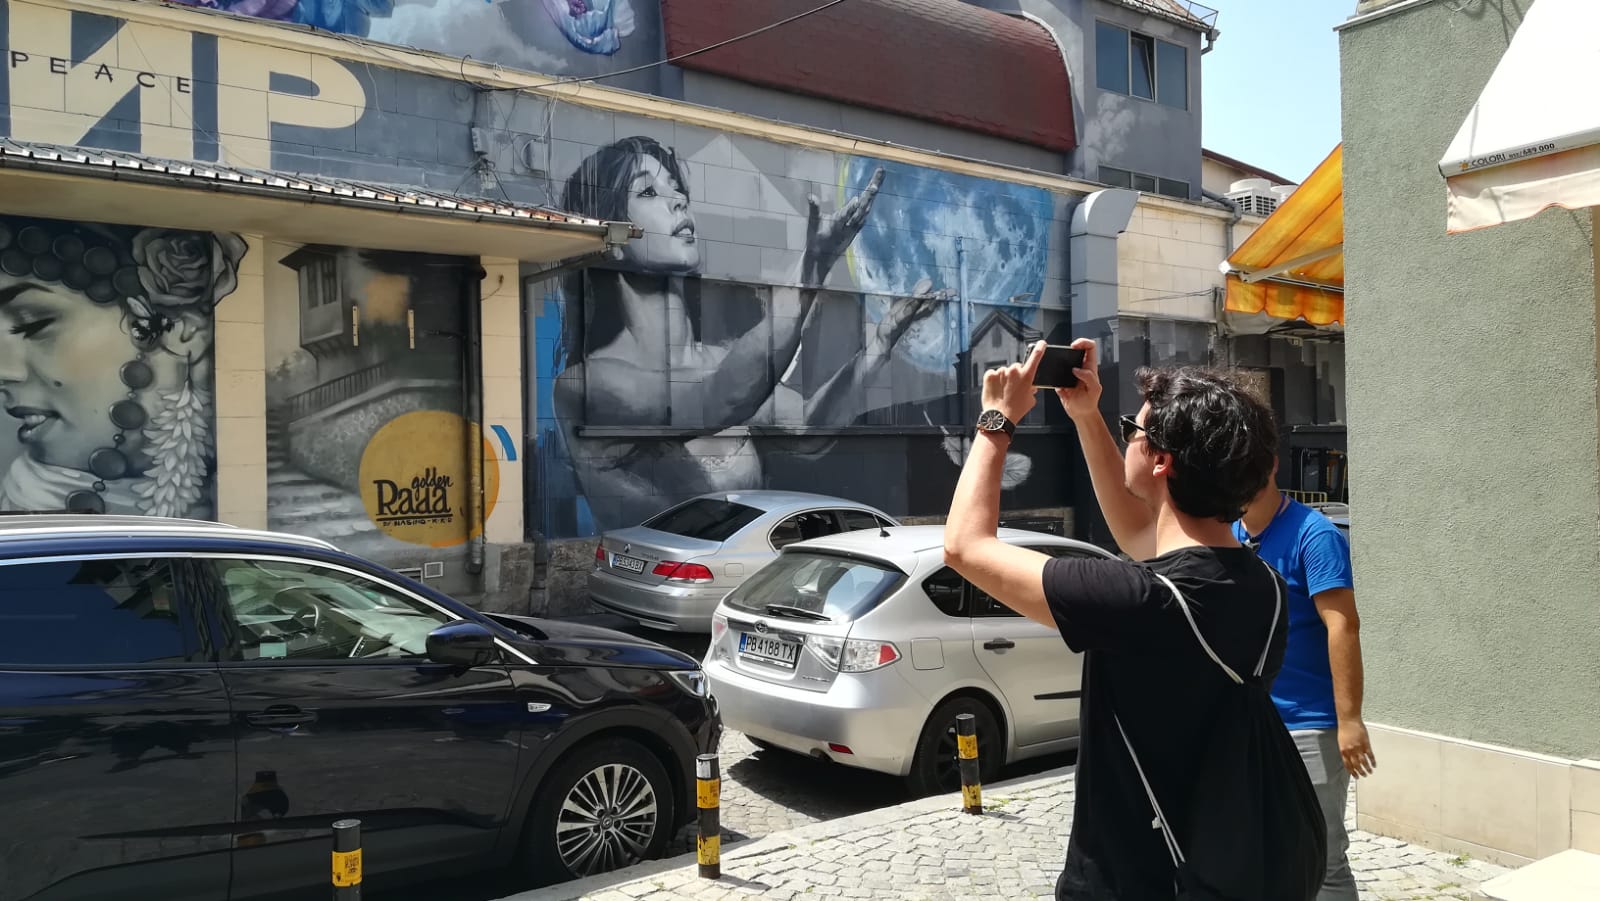 Lo mejor de Plovdiv que ver: los grafitis de Nasimo.